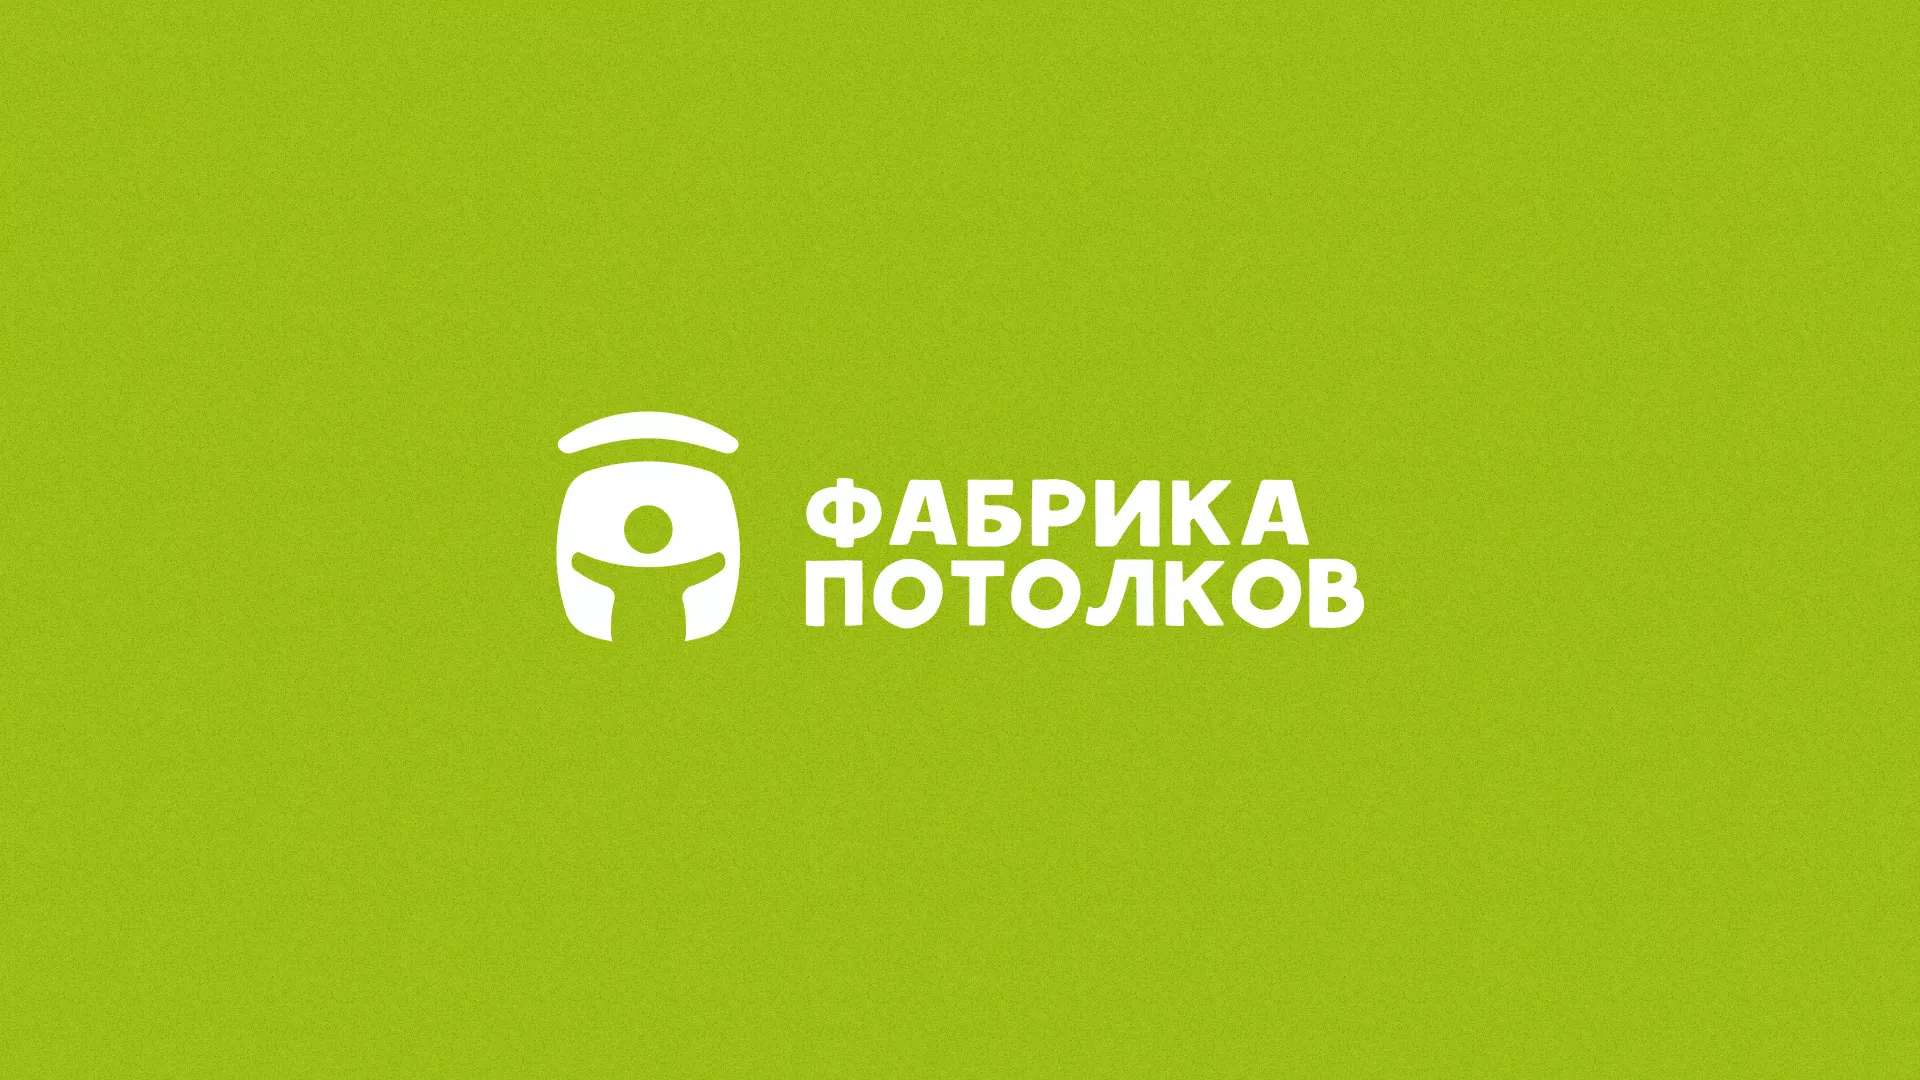 Разработка логотипа для производства натяжных потолков в Пятигорске